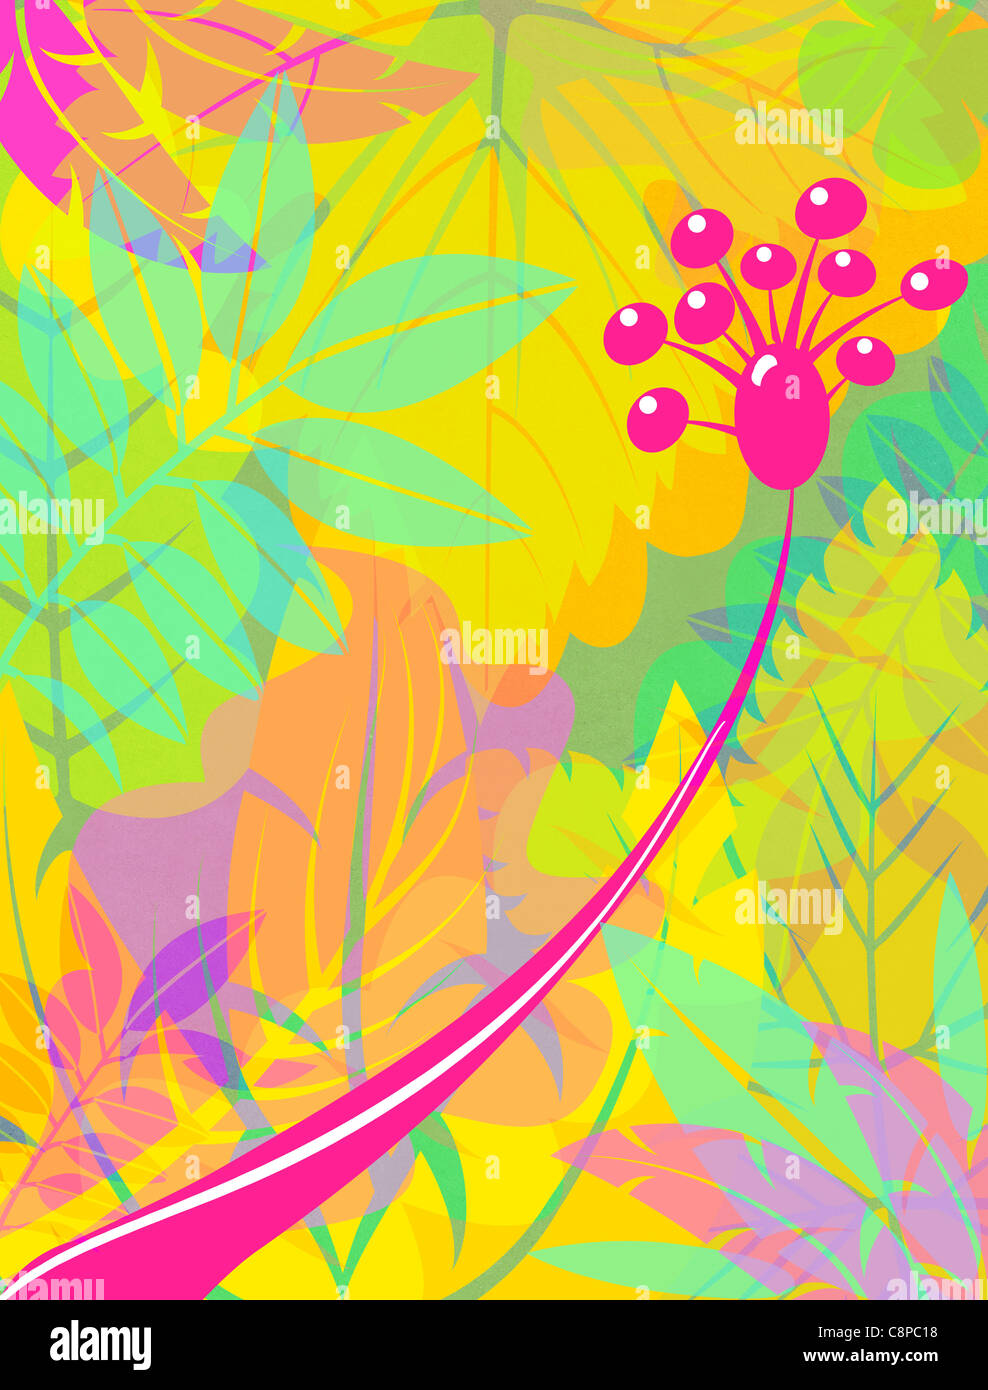 Colorés et graphiques représentant des feuilles stylisées de fleurs fuchsia Banque D'Images